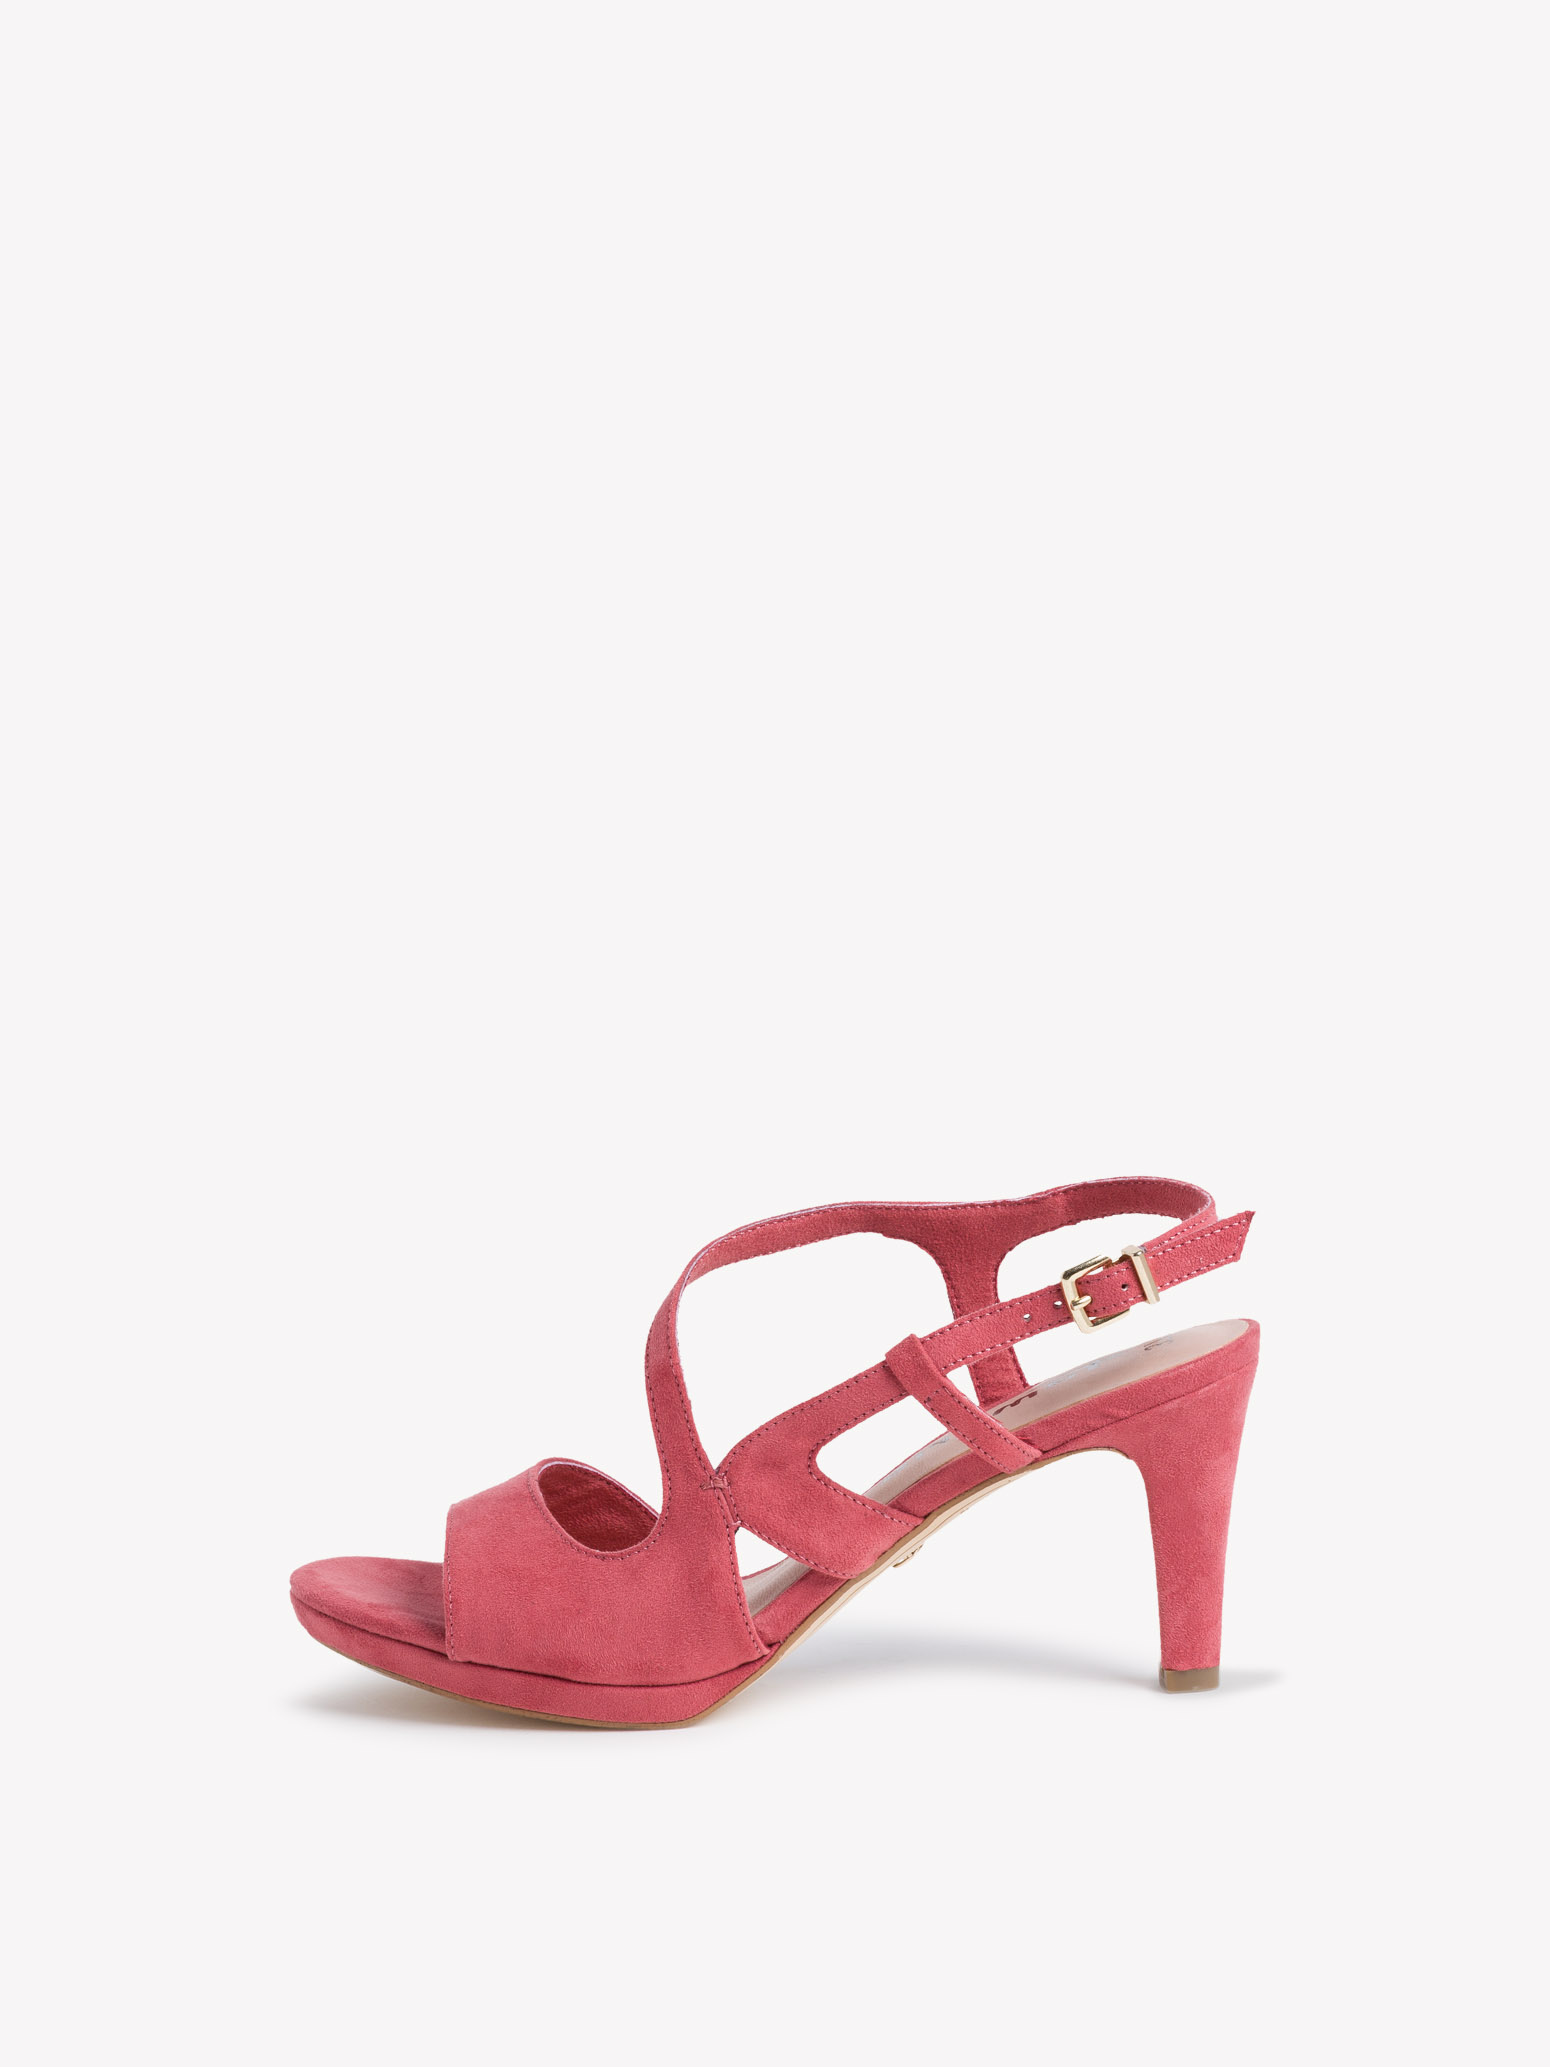 red heel sandals